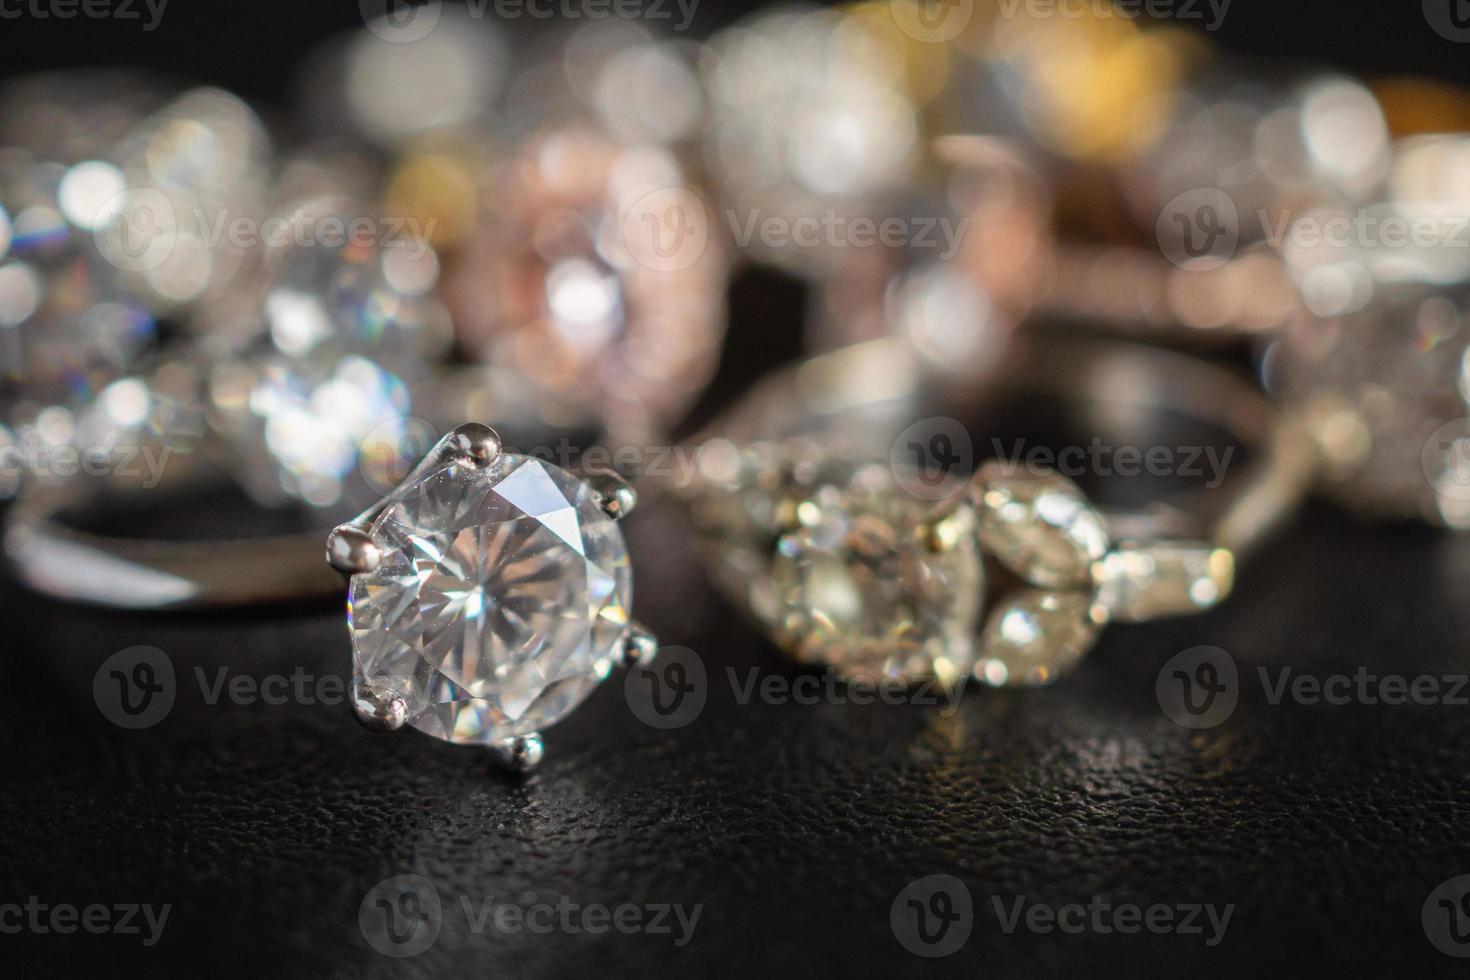 Bijoux bagues en diamant sur fond noir close up photo